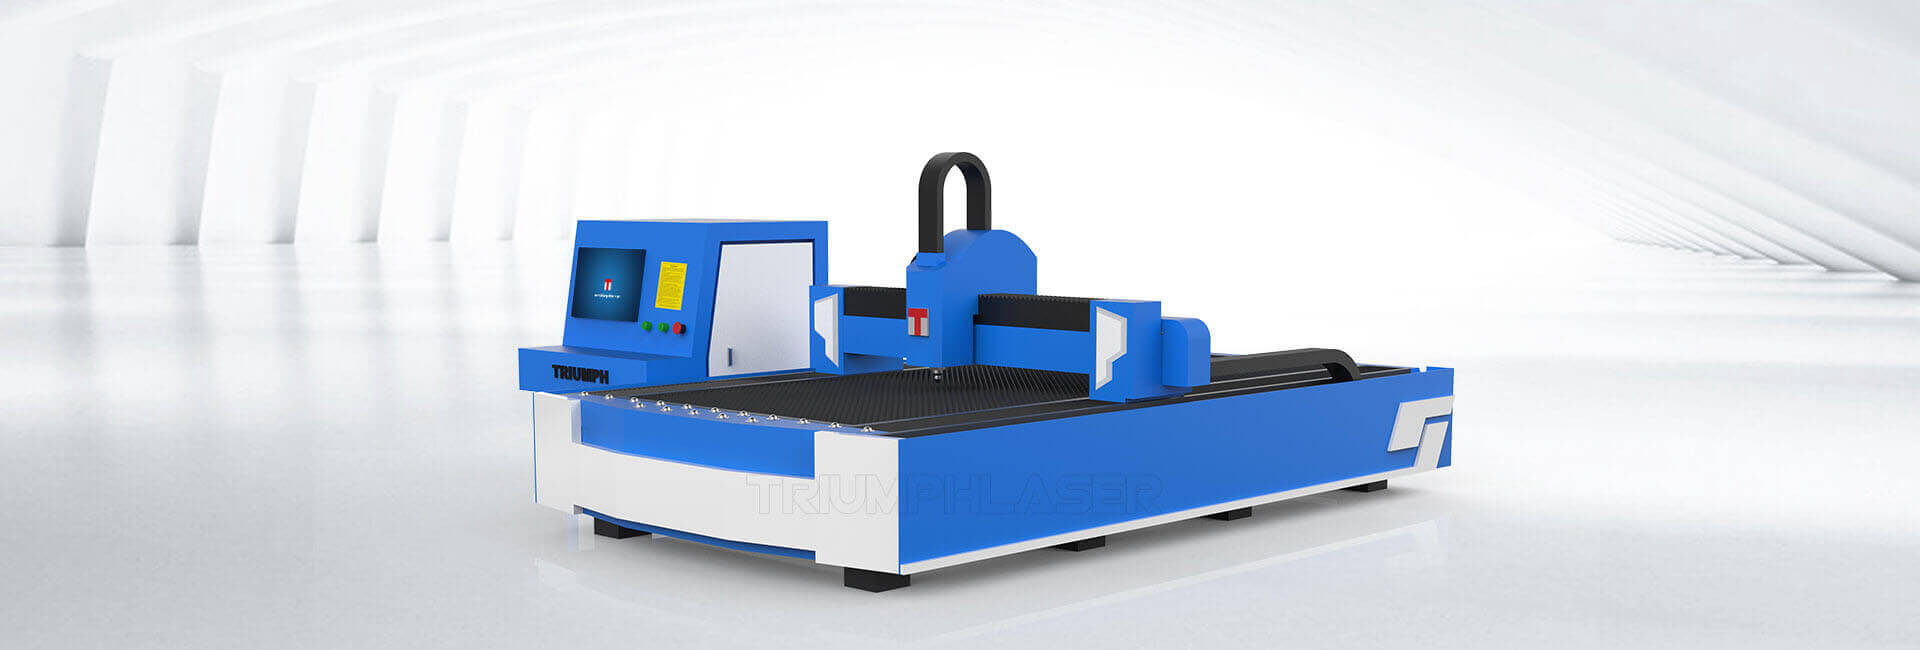 Advertising fiber laser cutting machine B-series